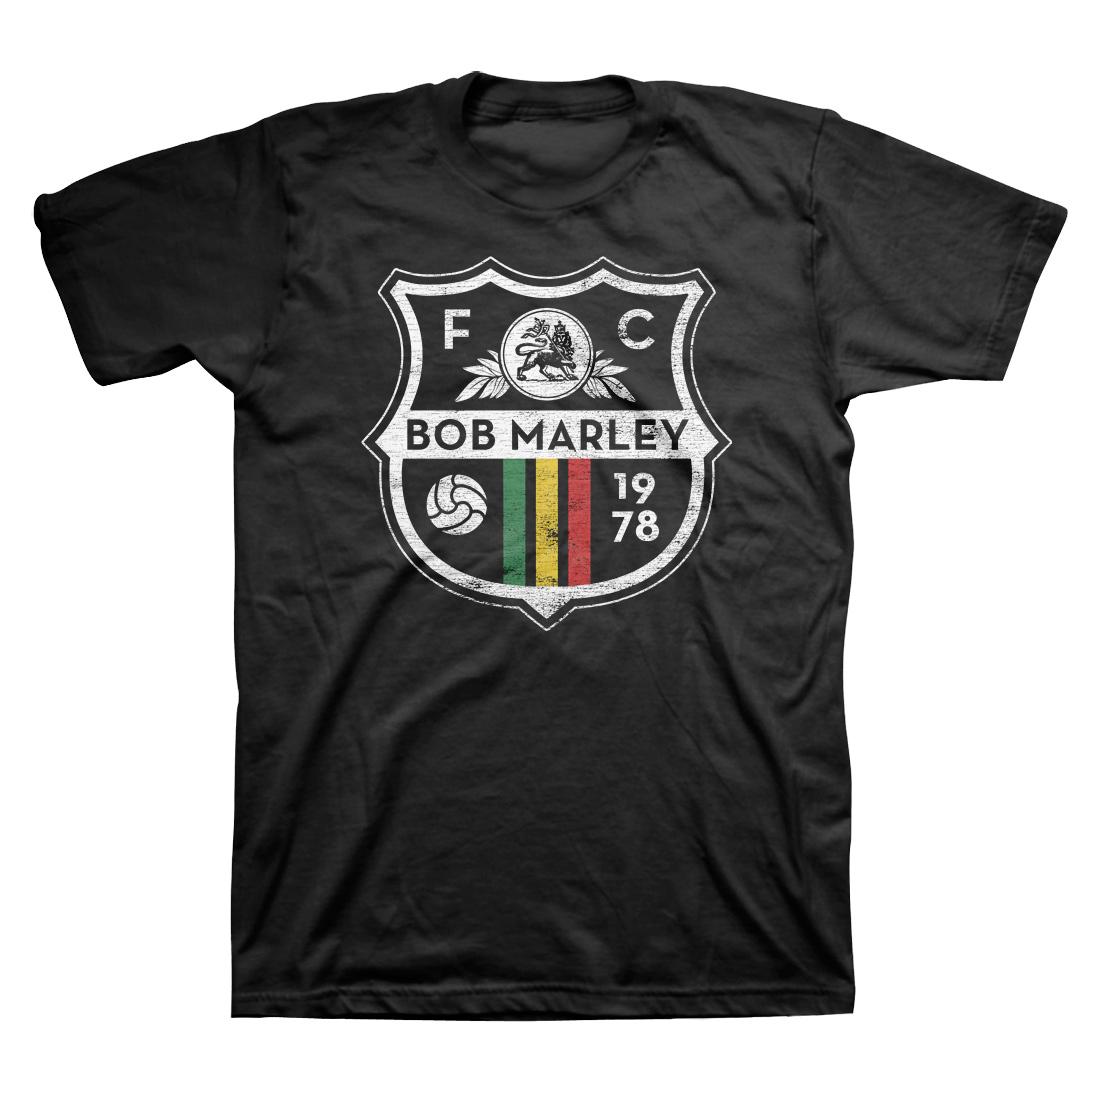 Bob Marley Soccer Crest T-shirt Village Soccer Shop